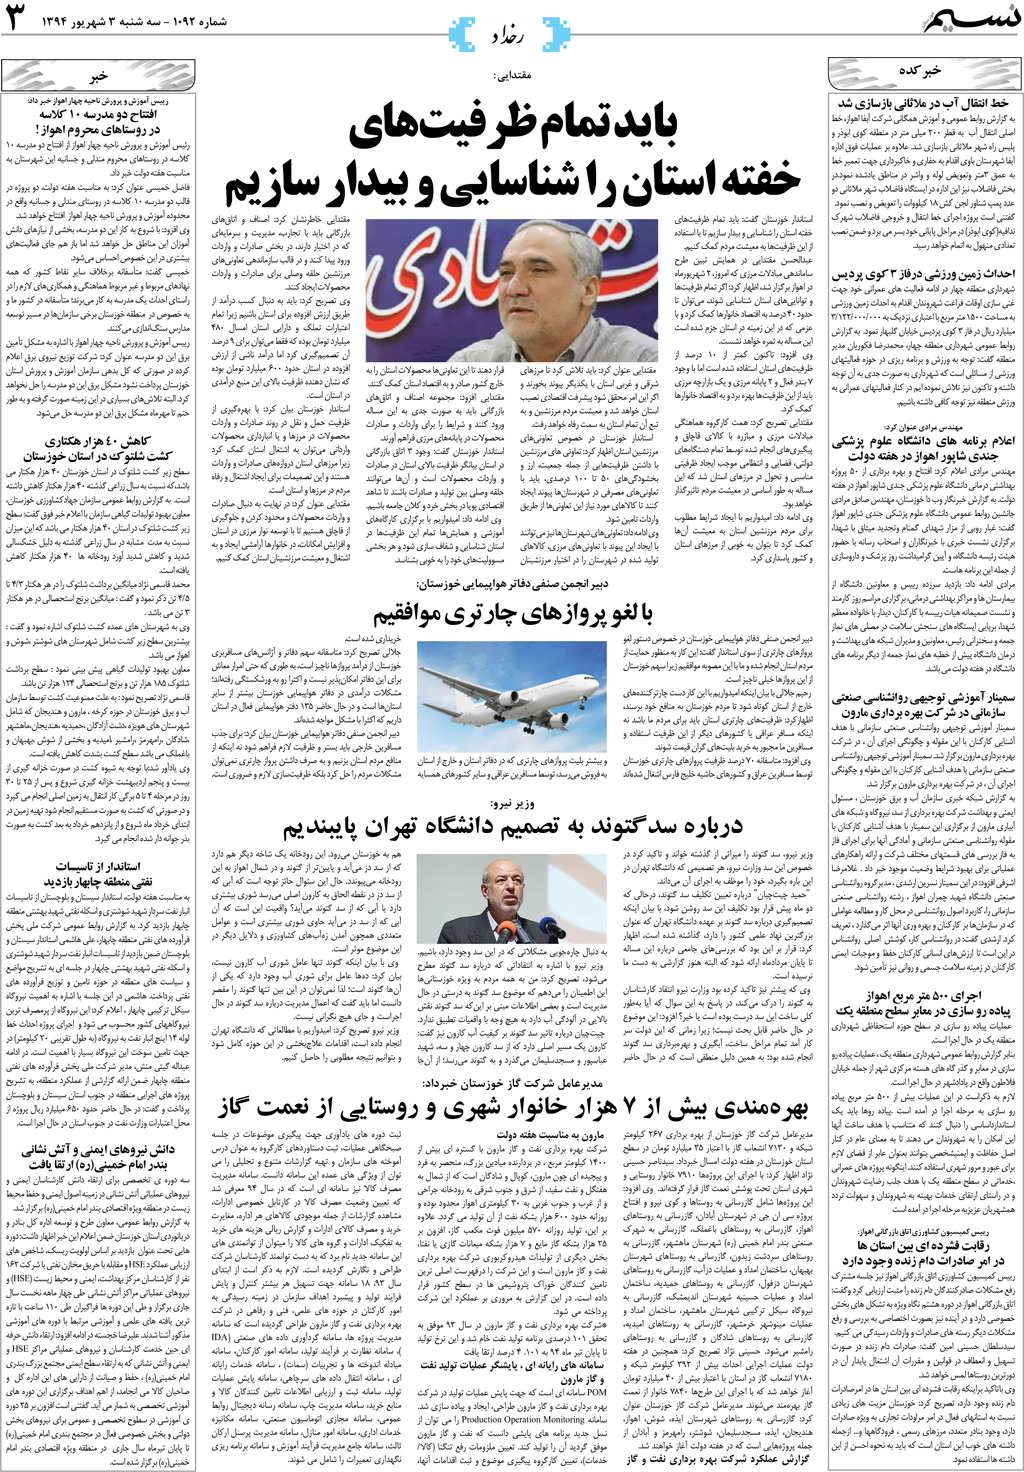 صفحه رخداد روزنامه نسیم شماره 1092